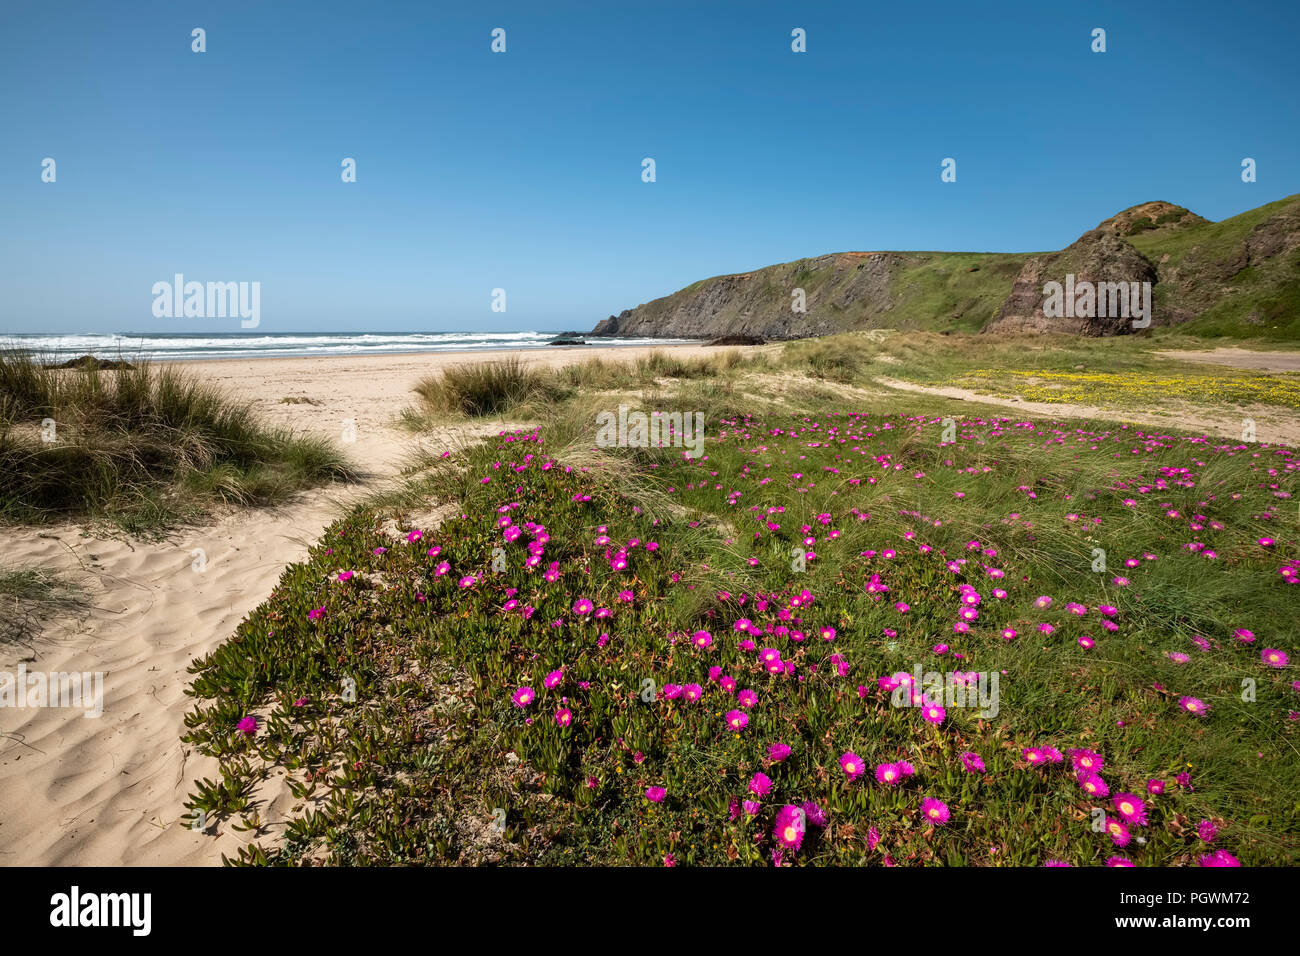 Dunes with flowers on the beach Playa de Xagós, Gozón, Costa Verde, Asturias, Spain Stock Photo